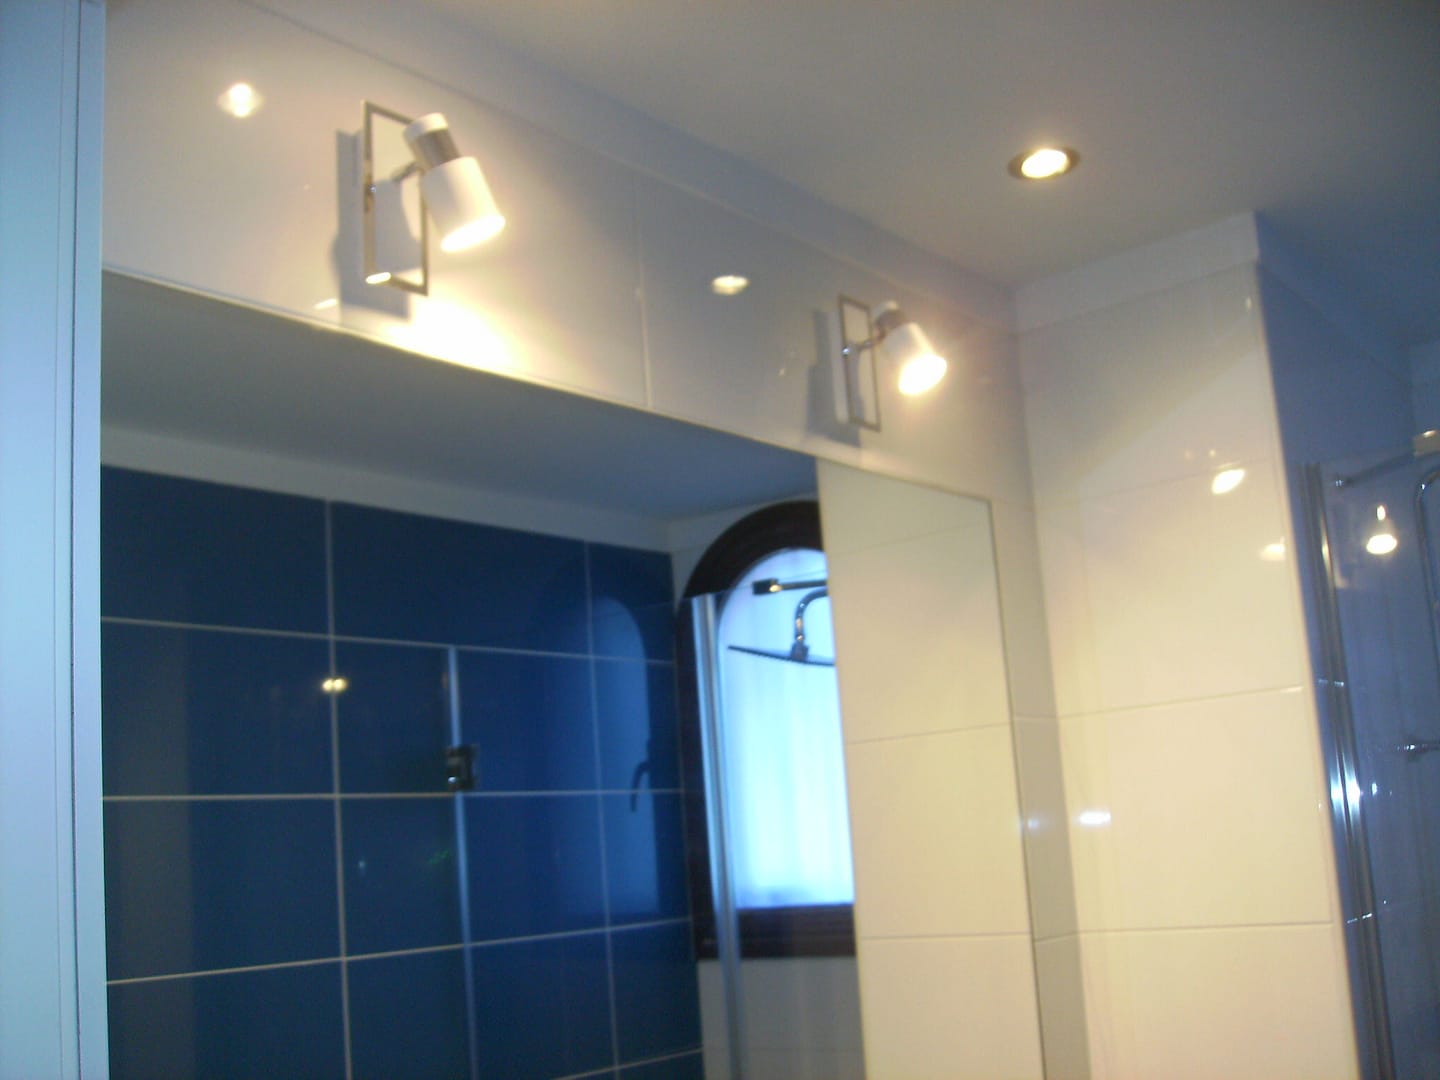 Baño realizado por decoradora interiorista en tenerife con la instalación de proyecto de iluminación